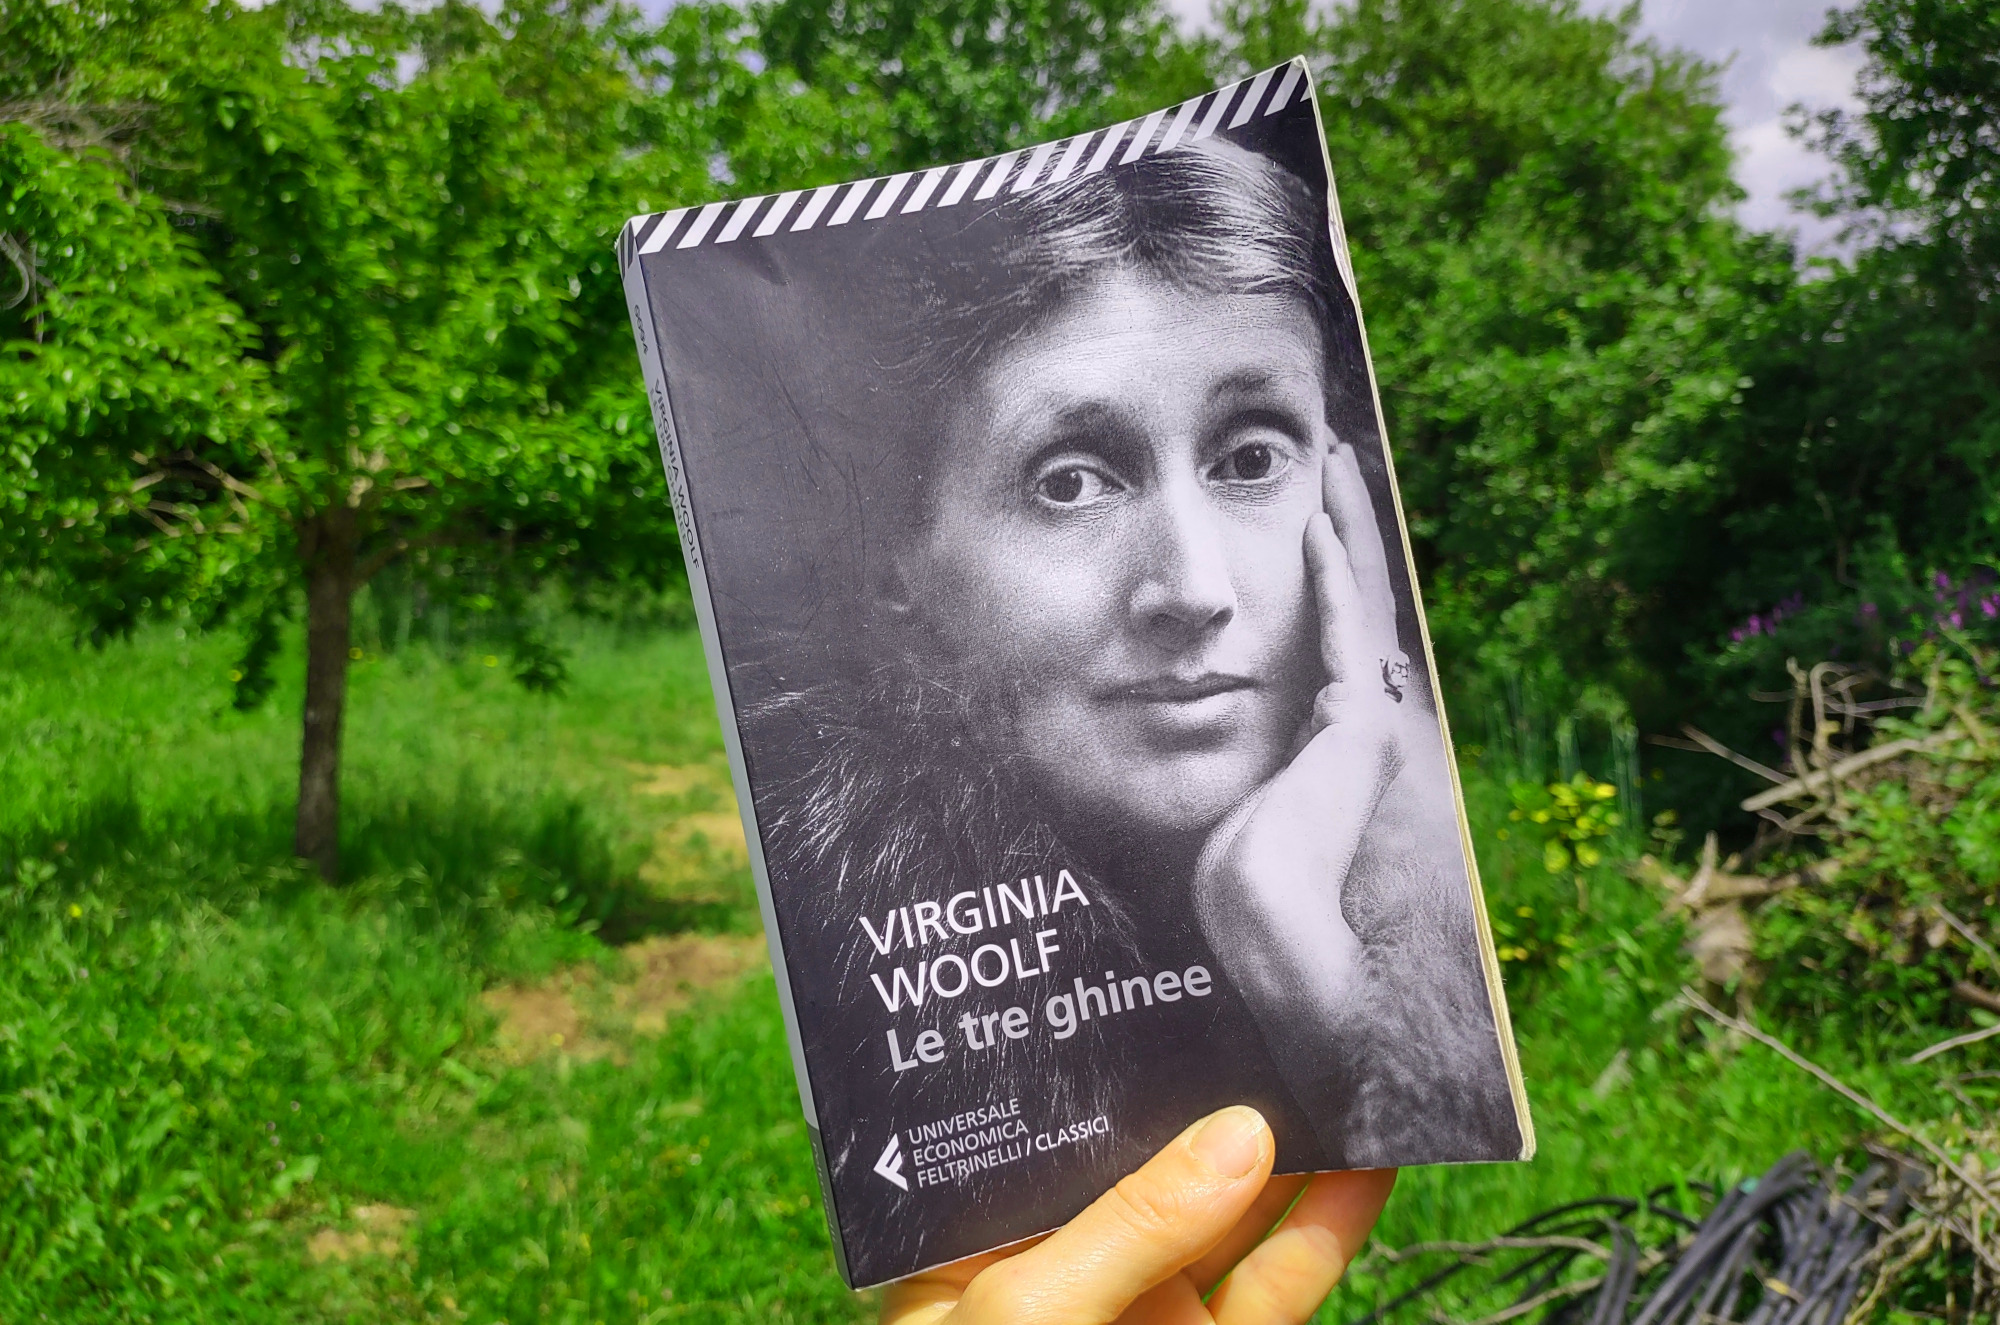 Le tre ghinee: il”pamphlet” ancora attuale  di Virginia Woolf per evitare la guerra